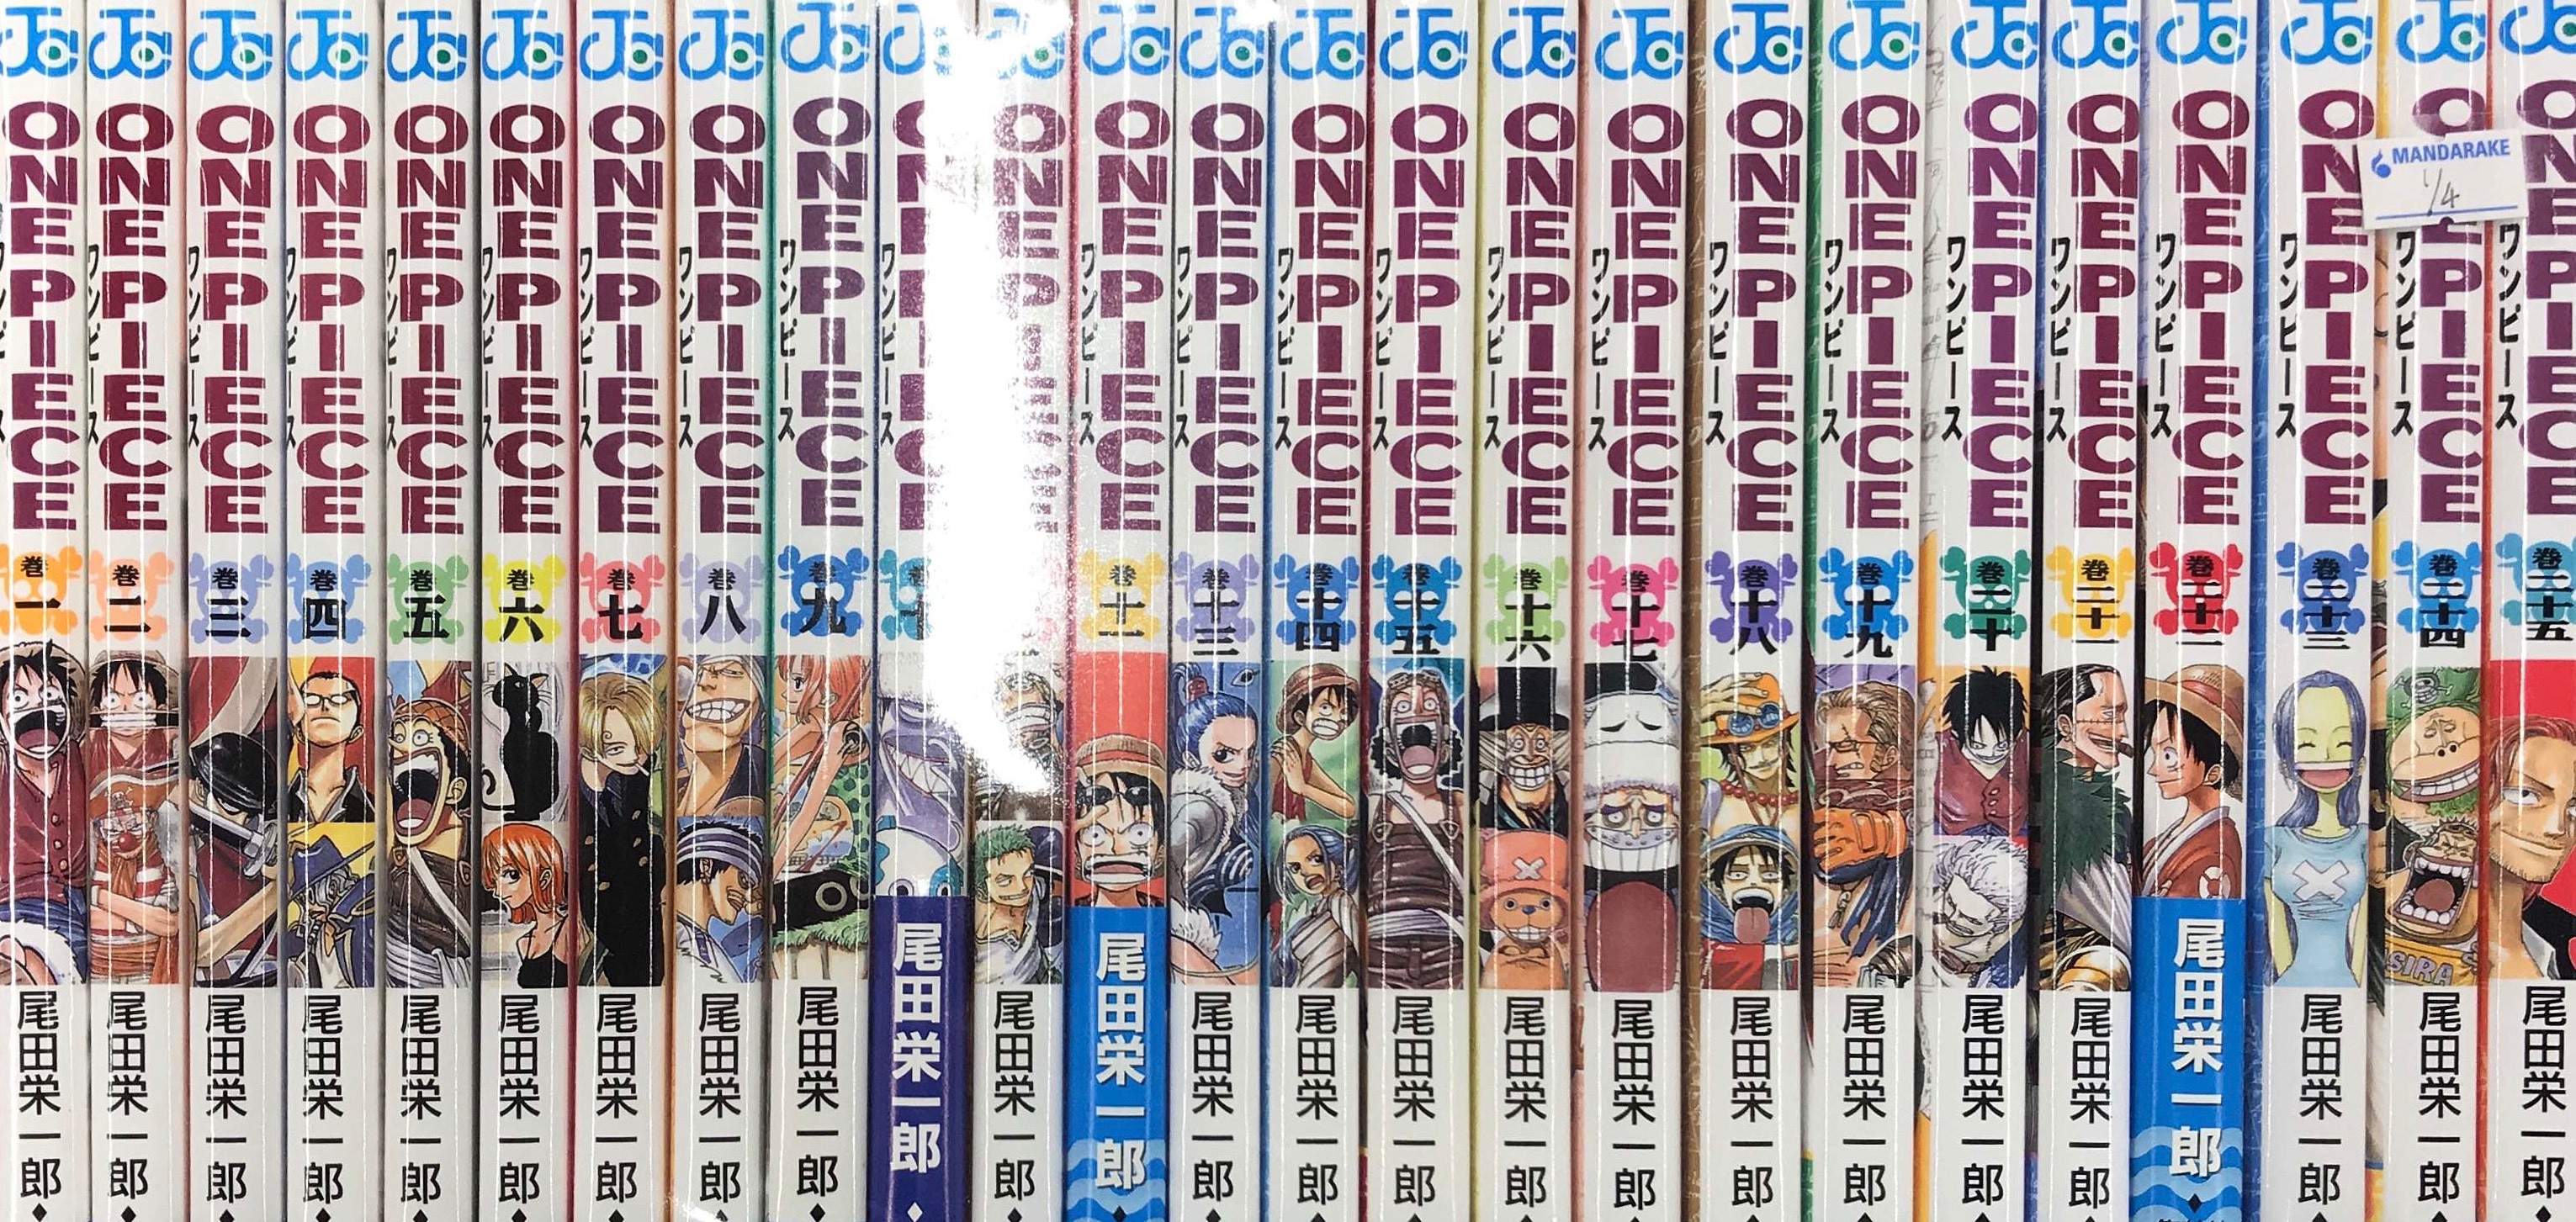 集英社 ジャンプコミックス 尾田栄一郎 One Piece 1 96巻 最新刊セット まんだらけ Mandarake